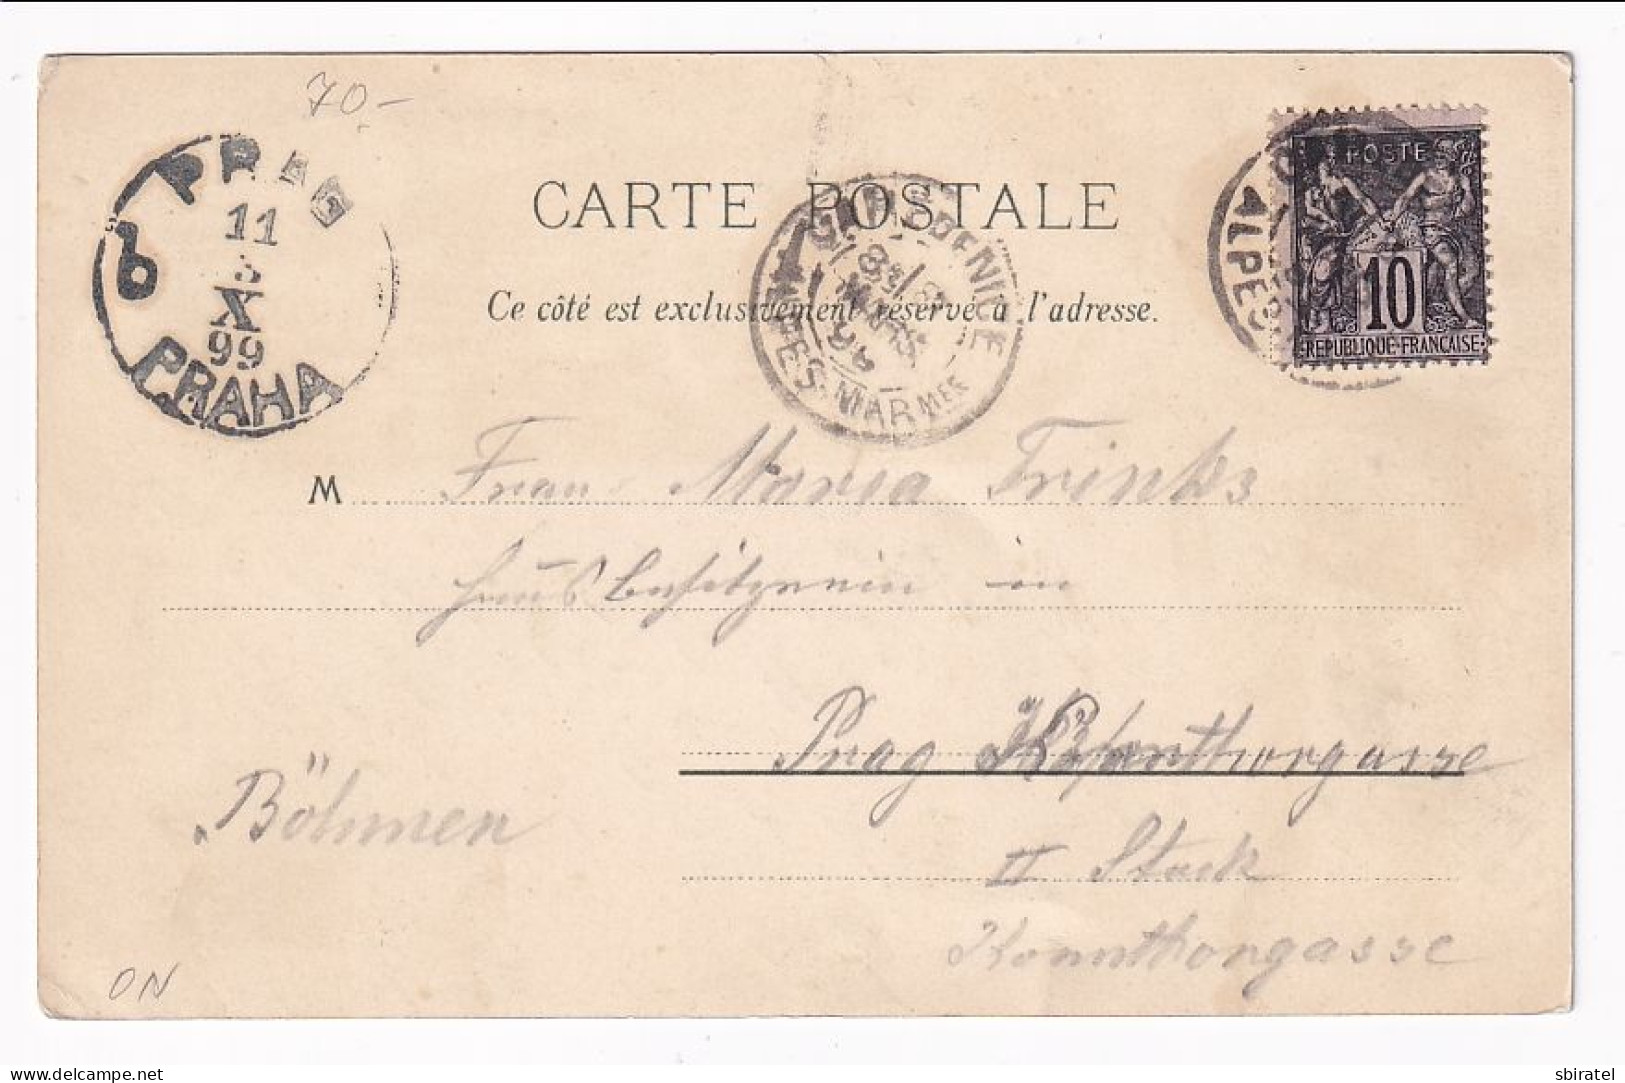 Souvenir De Menton 1899 - Menton